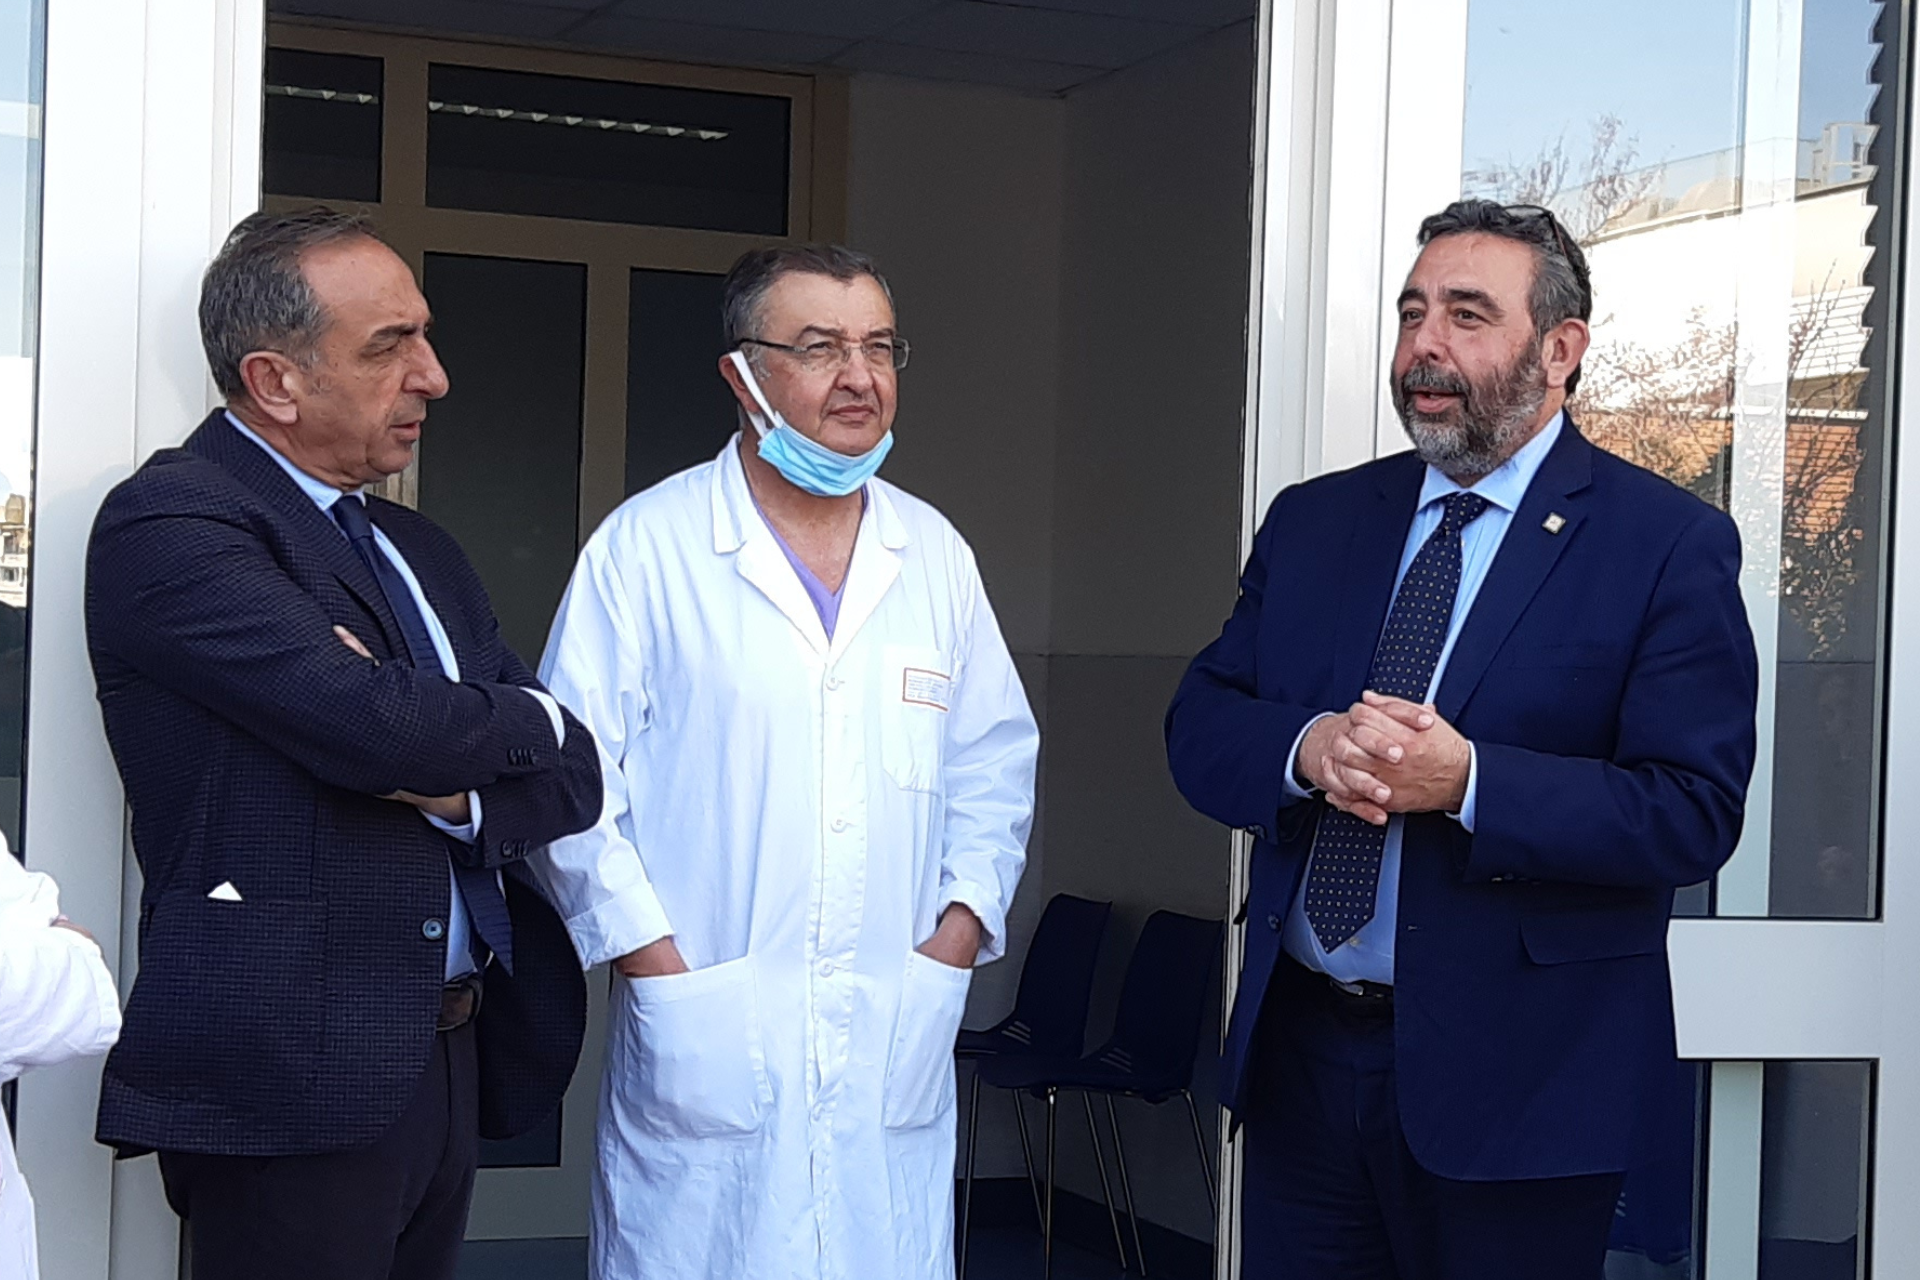 S. Martino, inaugurati i nuovi locali dell’Urologia